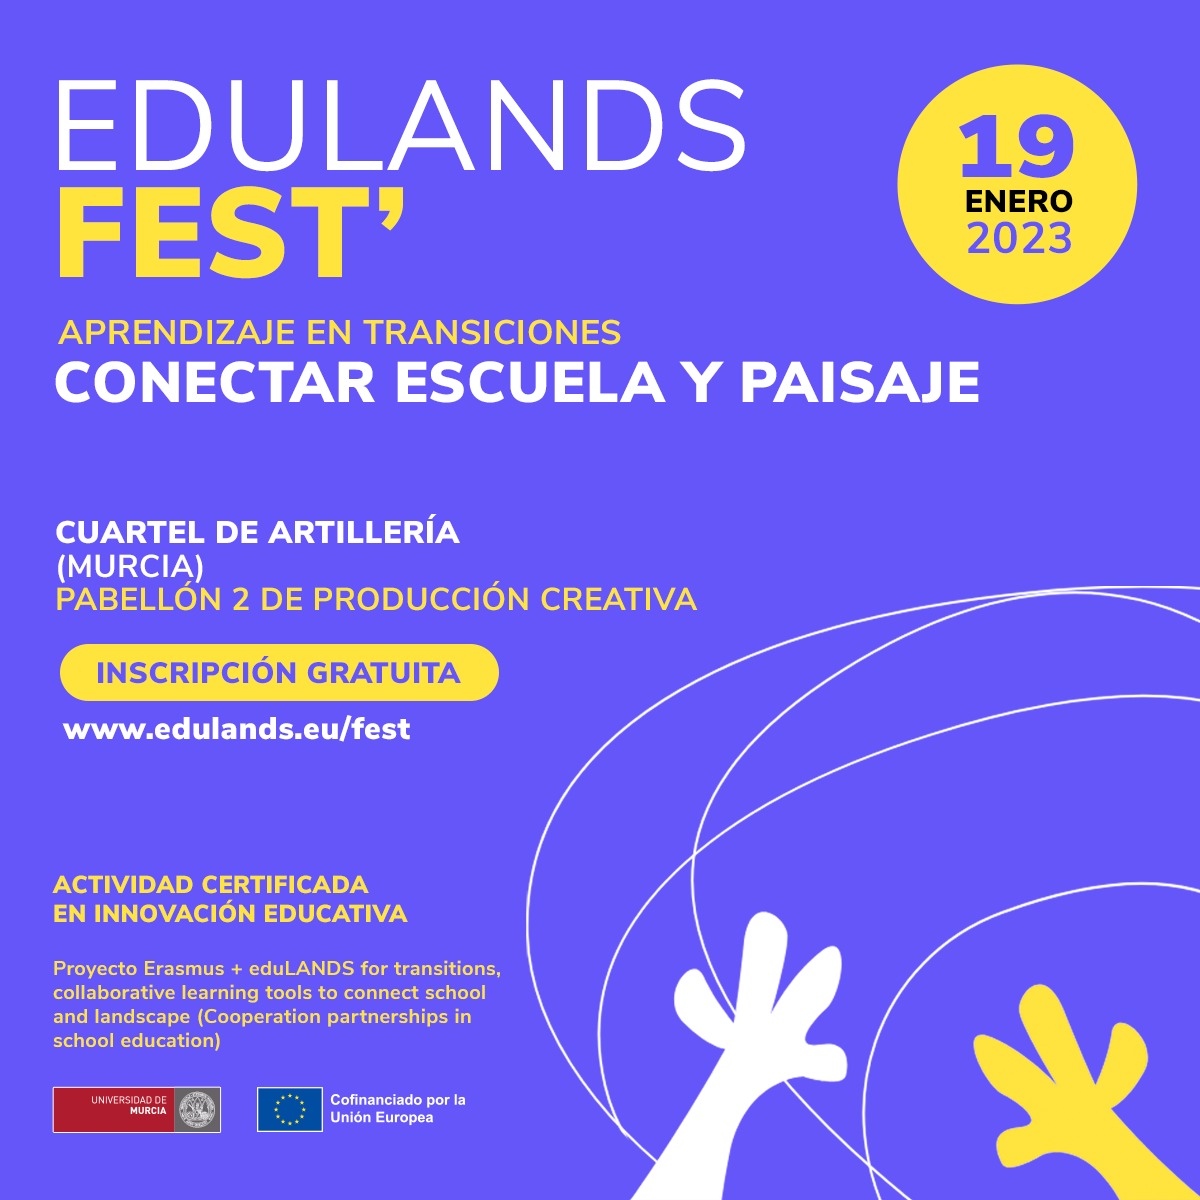 EDULANDS FEST: CONECTAR IES/ESCUELA CON EL PAISAJE CERCANO, un festival de innovación pedagógica el 19 de enero en Murcia